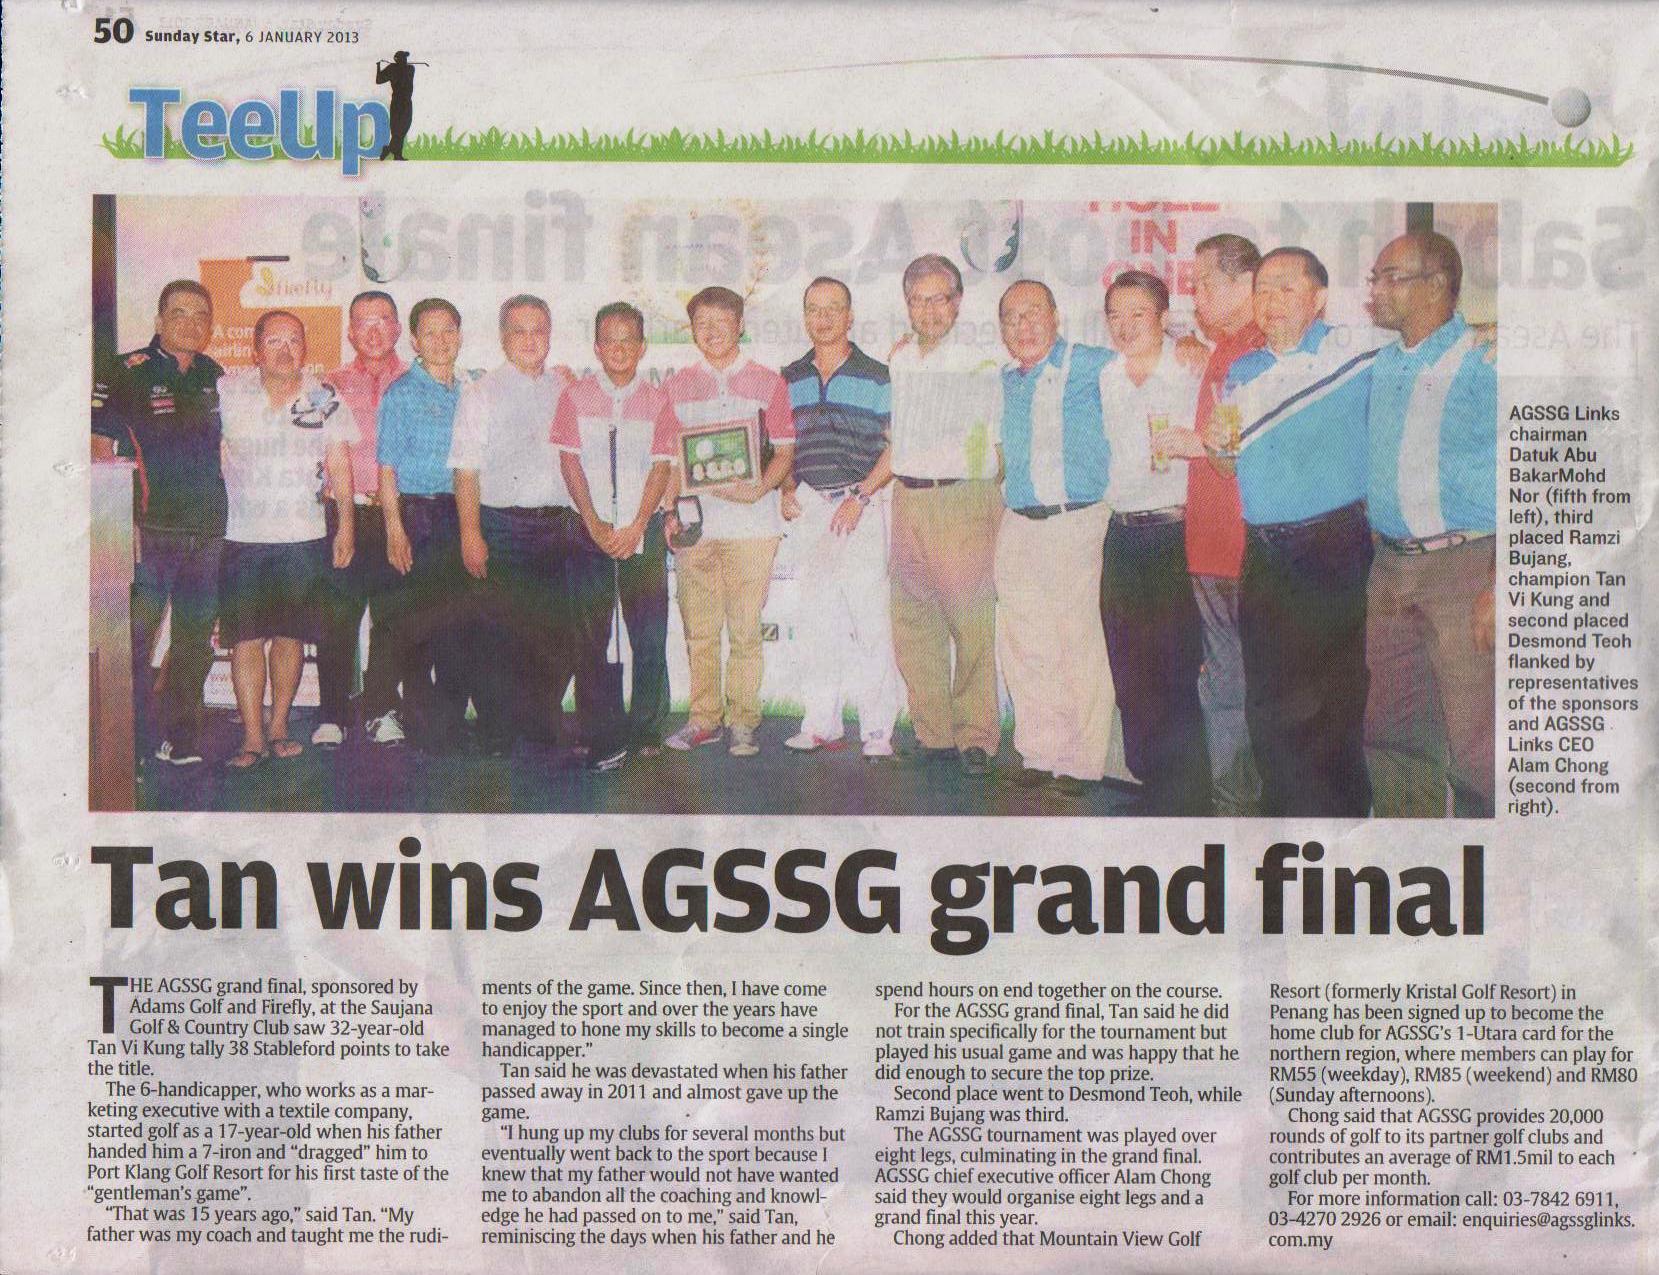 AGSSG Grand Final